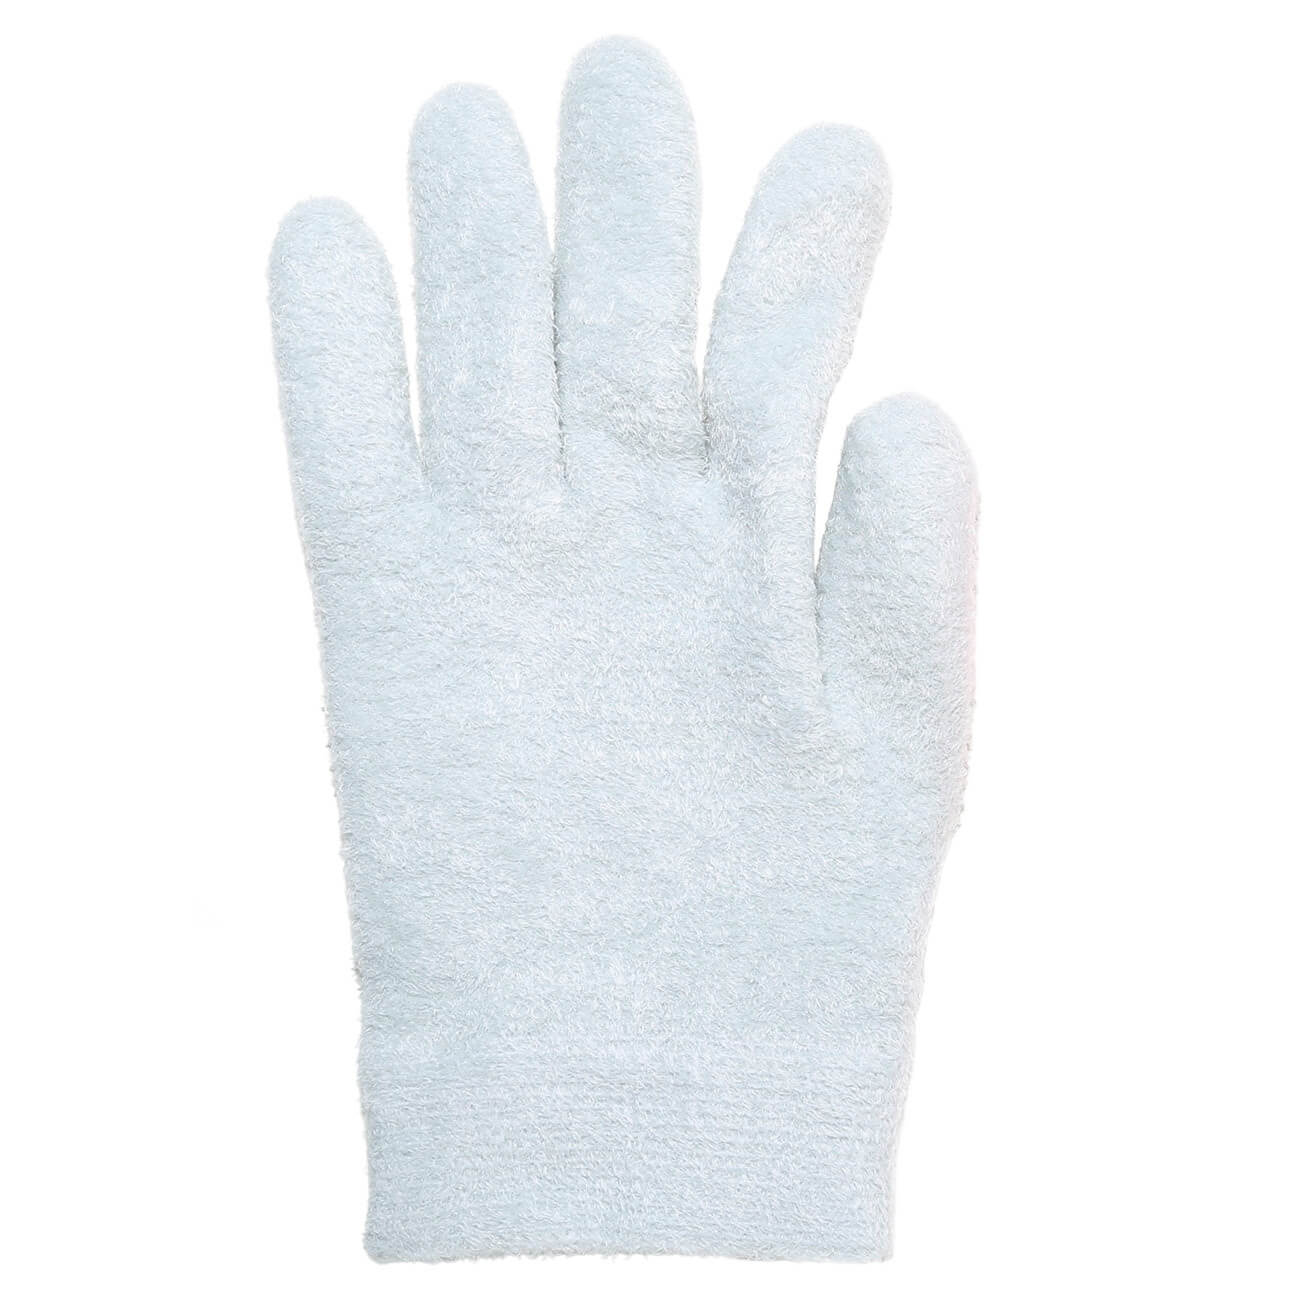 Как сделать массажные перчатки для детей самостоятельно